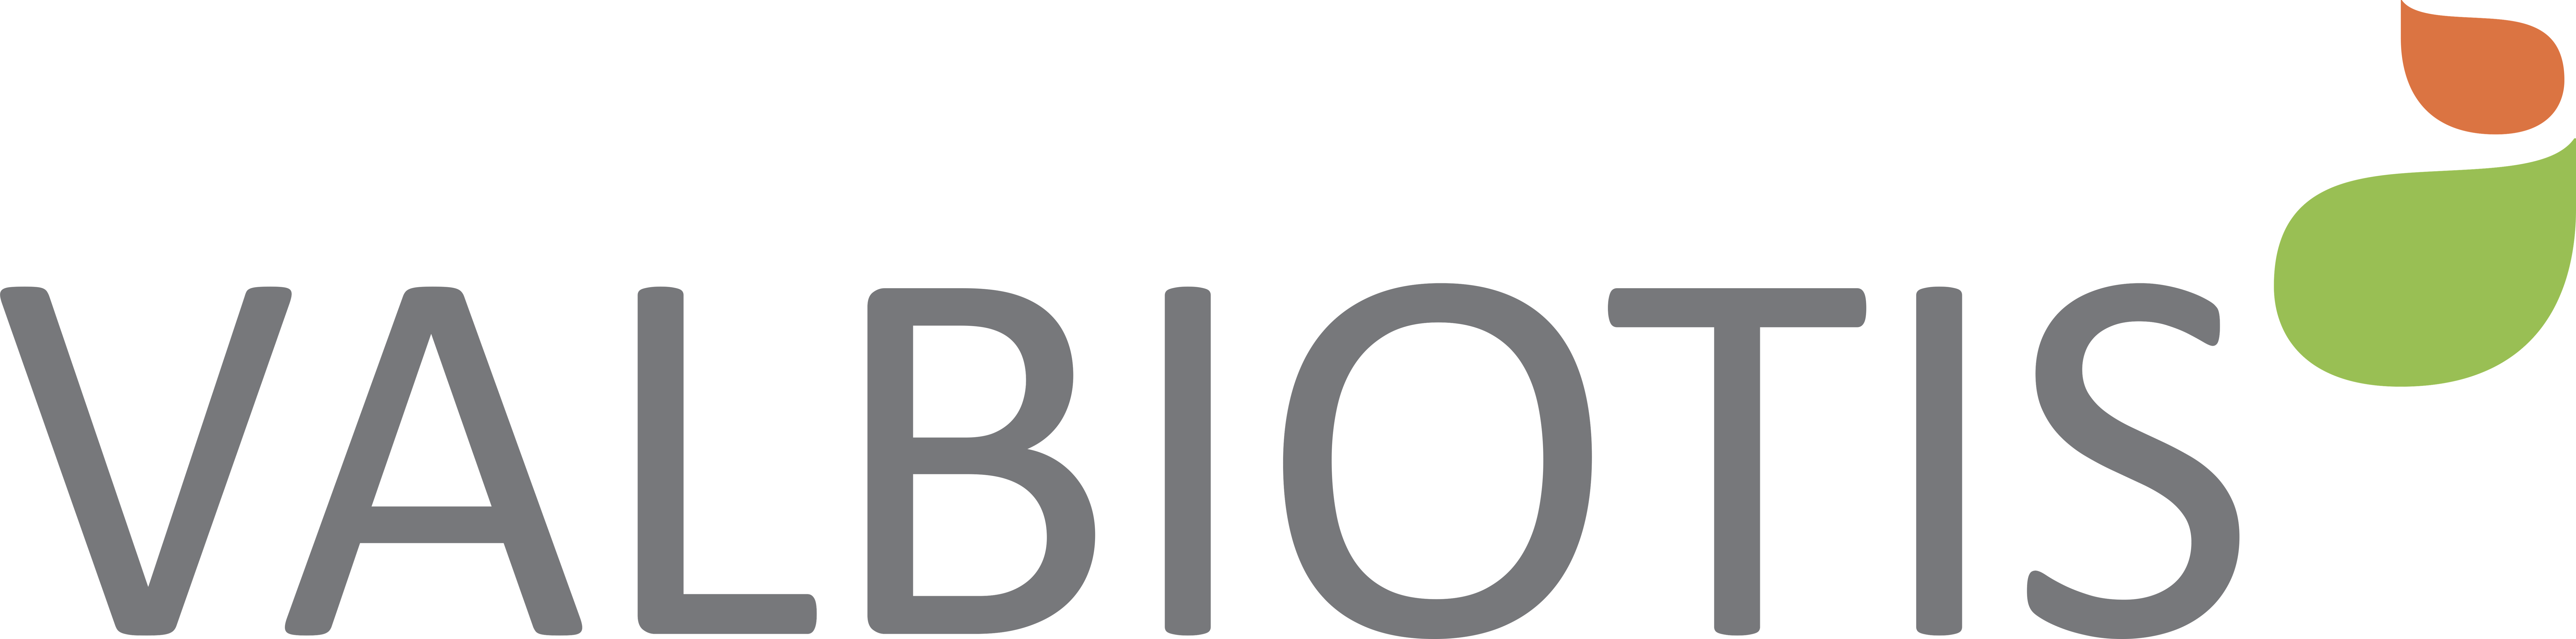 Valbiotis-logo